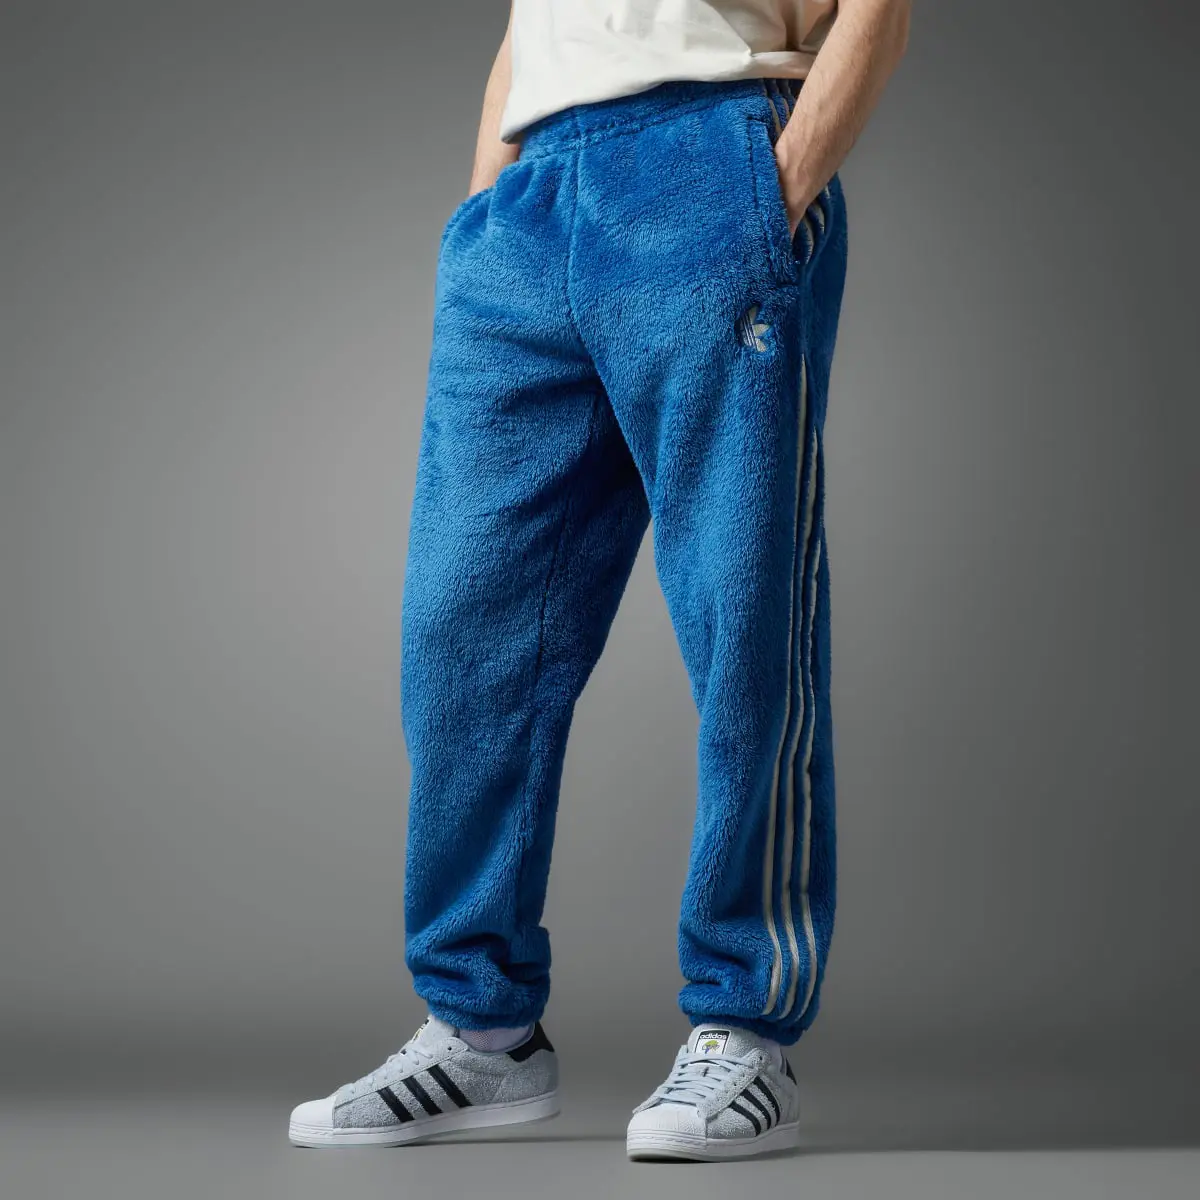 Adidas Indigo Herz Fur Pants. 1